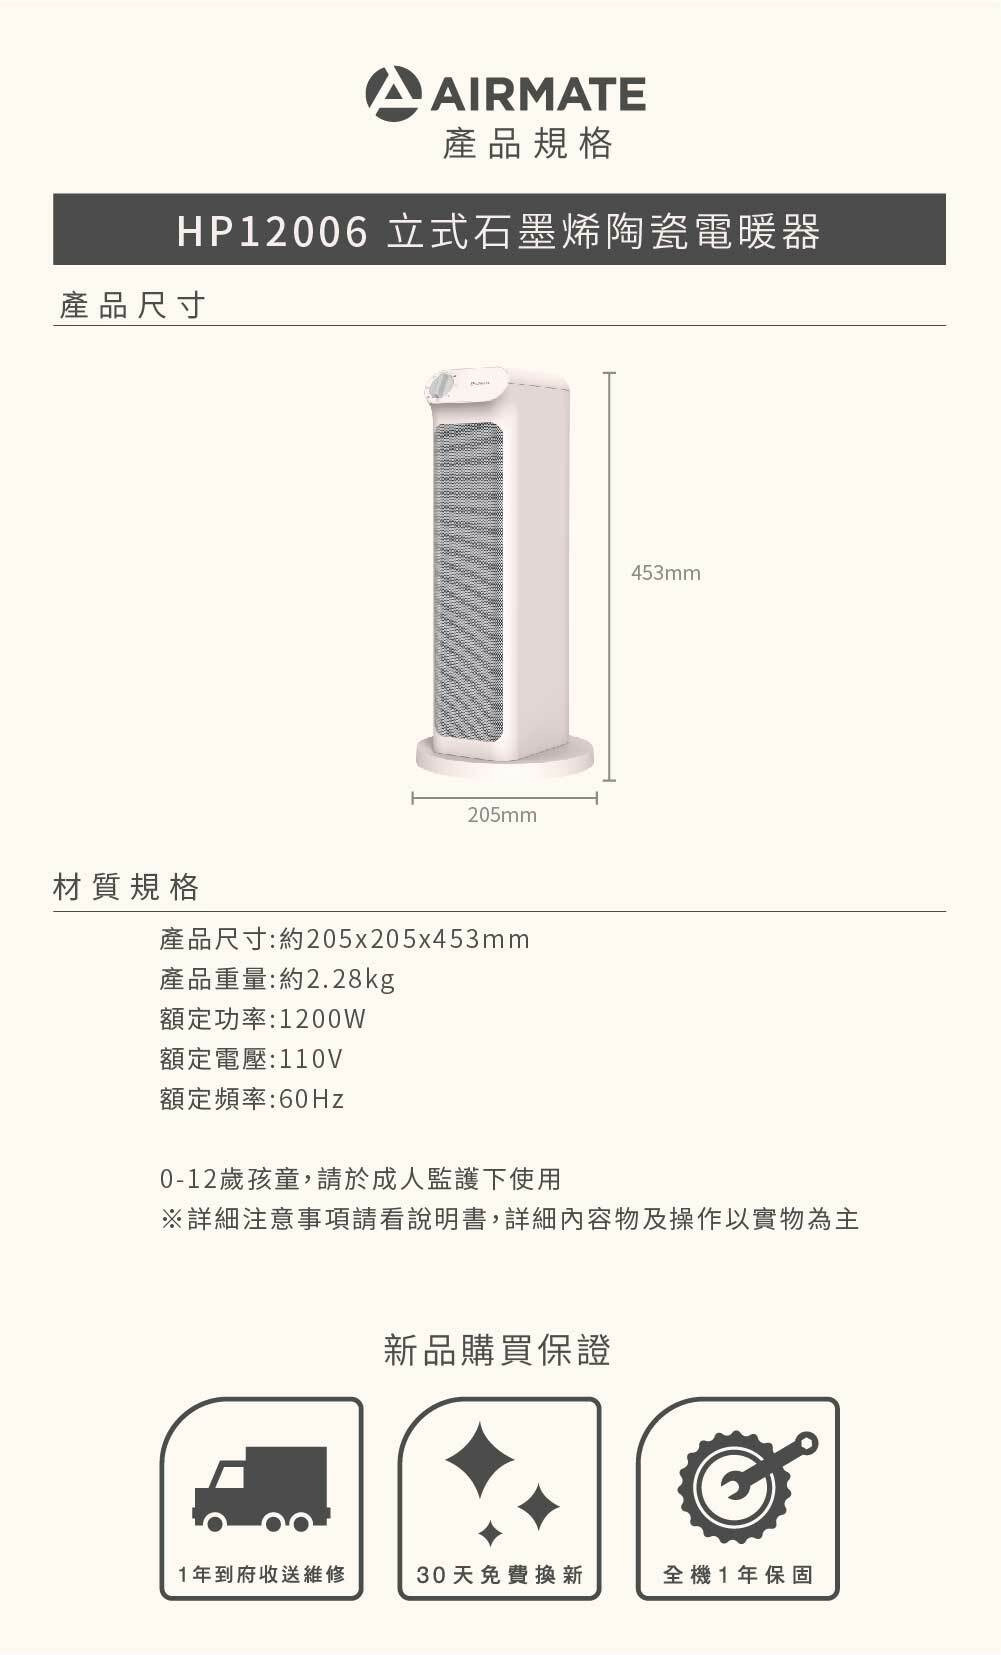 HP12006 立式石墨烯陶瓷電暖器 產品規格